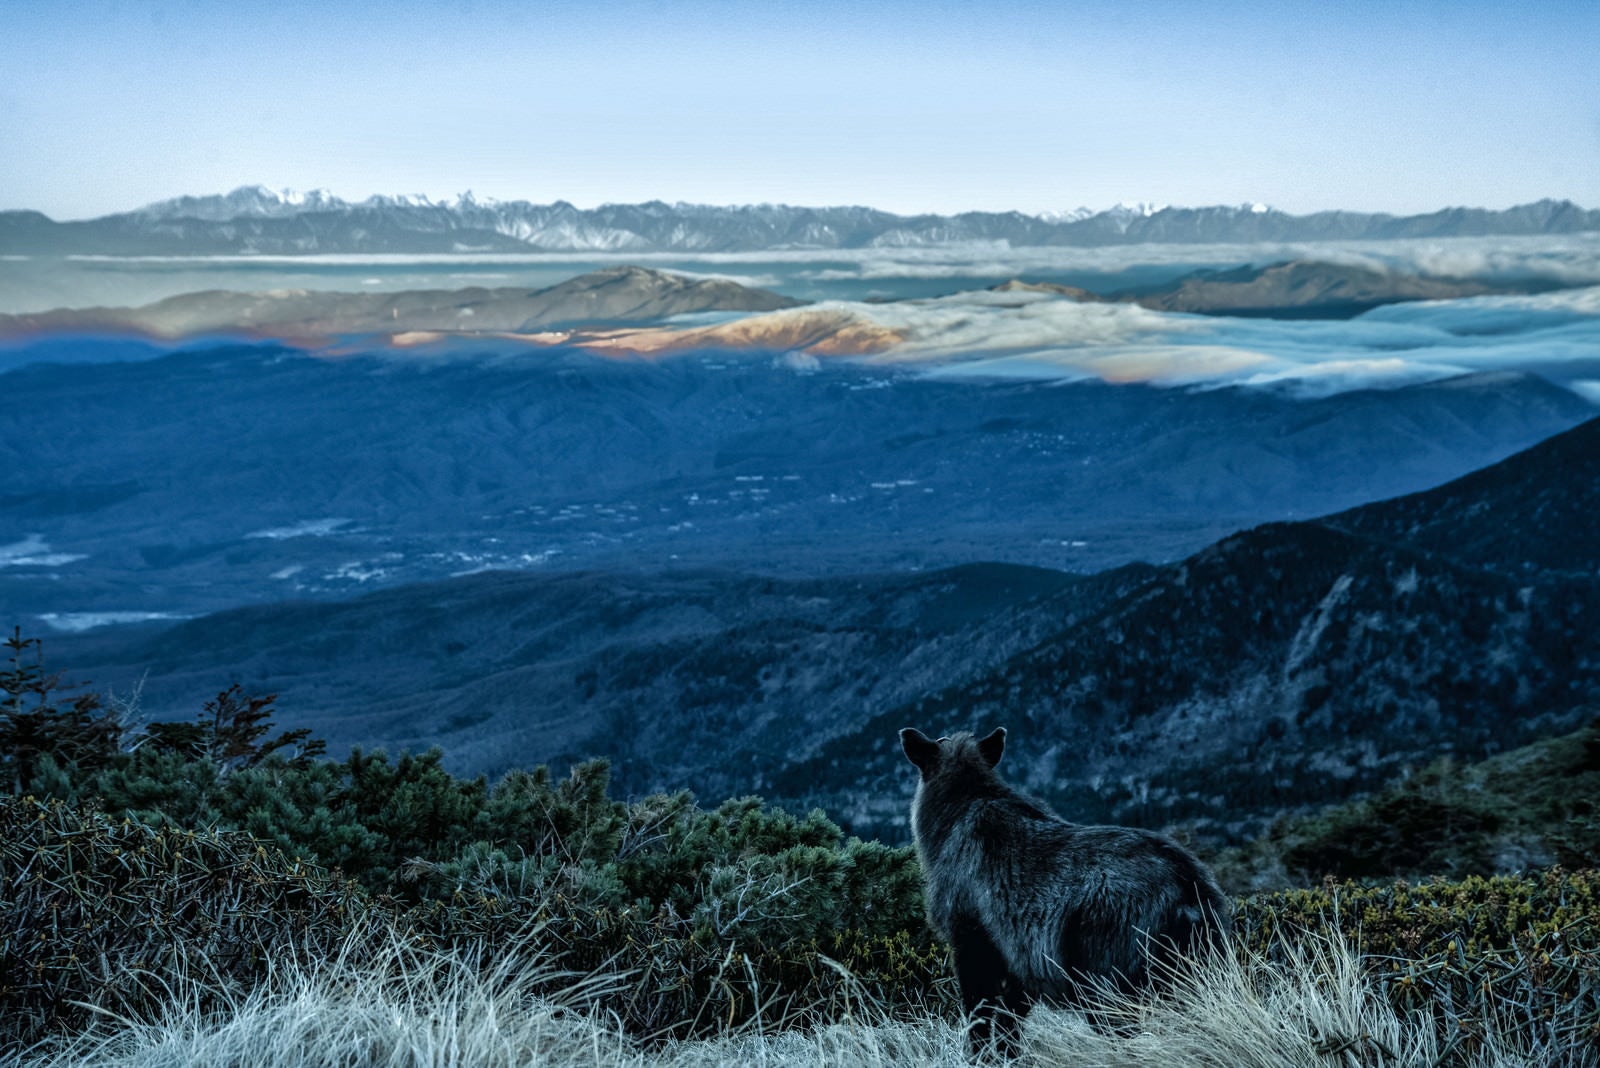 「霞む空と山岳を望む野生のカモシカ」の写真